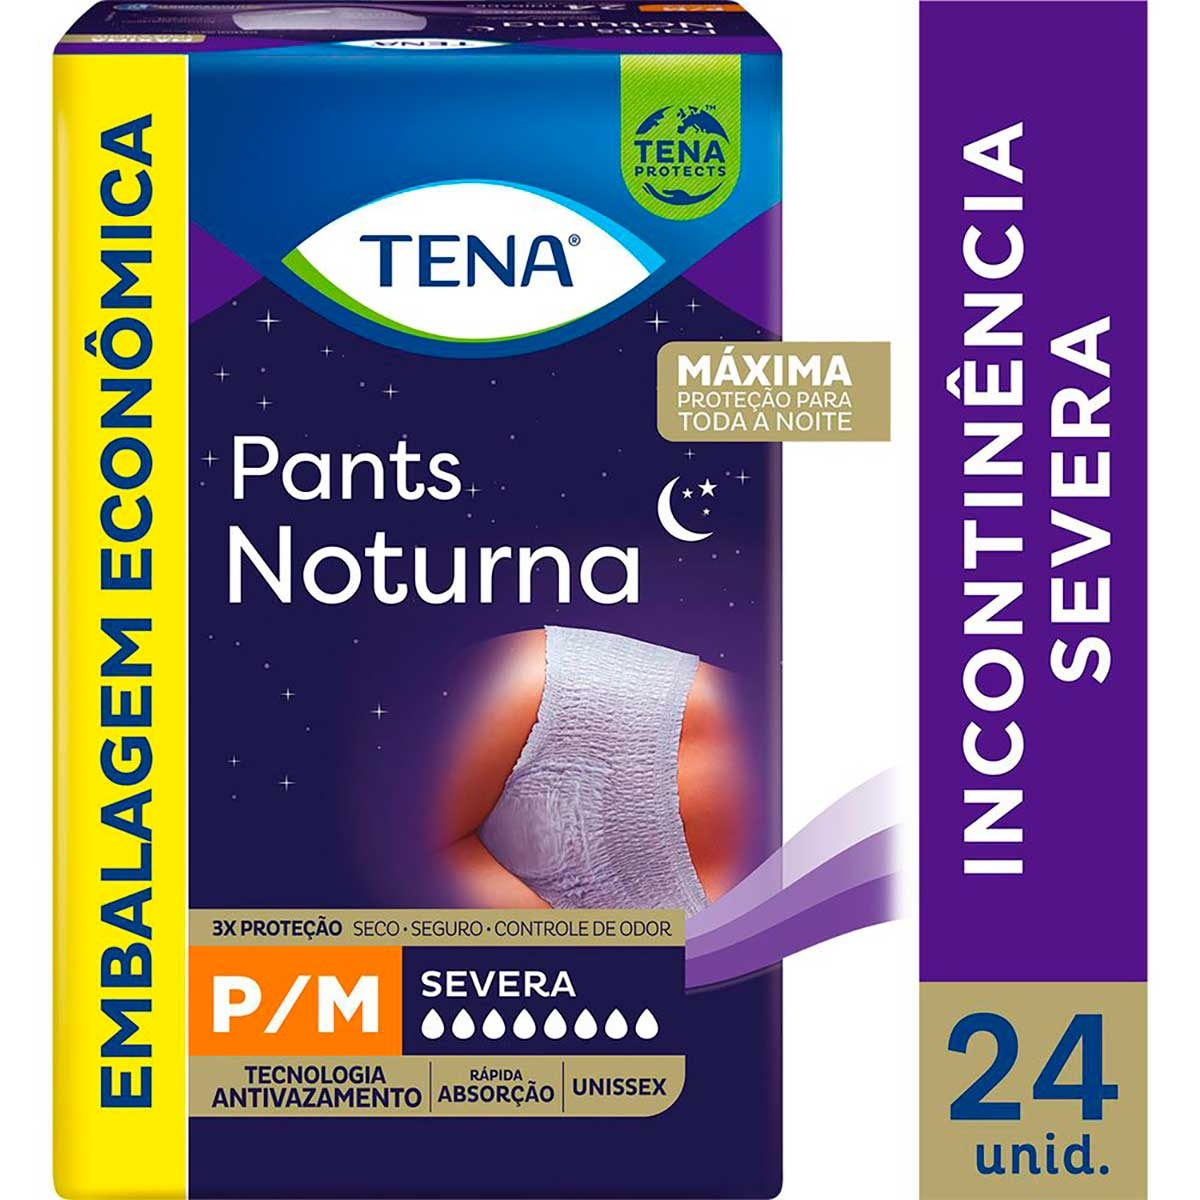 Tena Pants Noturna (P/M) - 7 UN